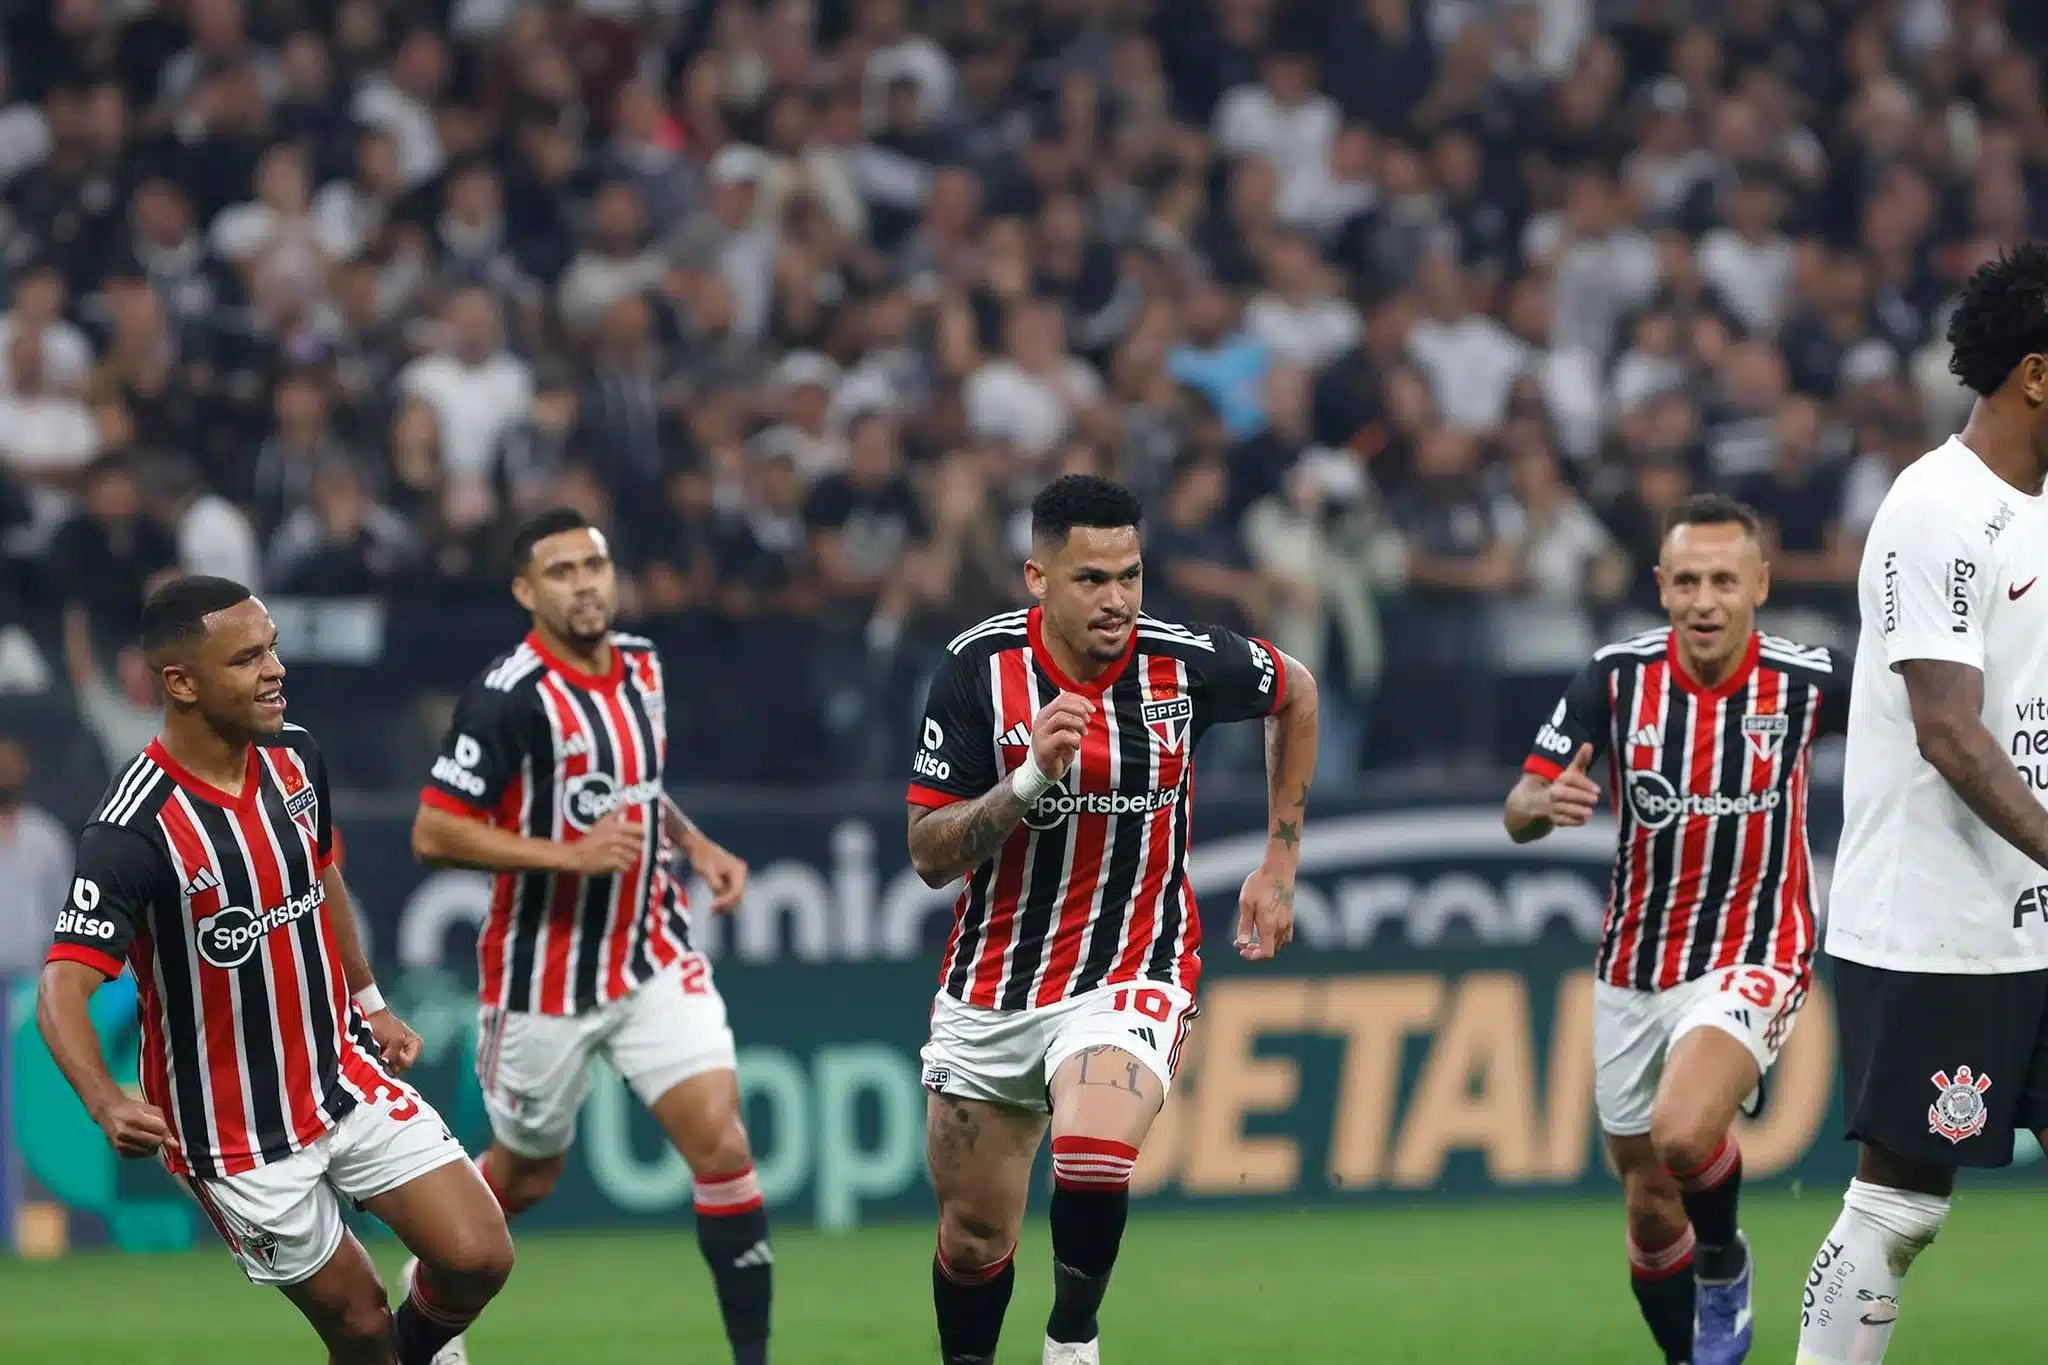 Luciano provoca o Corinthians: "Até que tentaram, mas não deu"